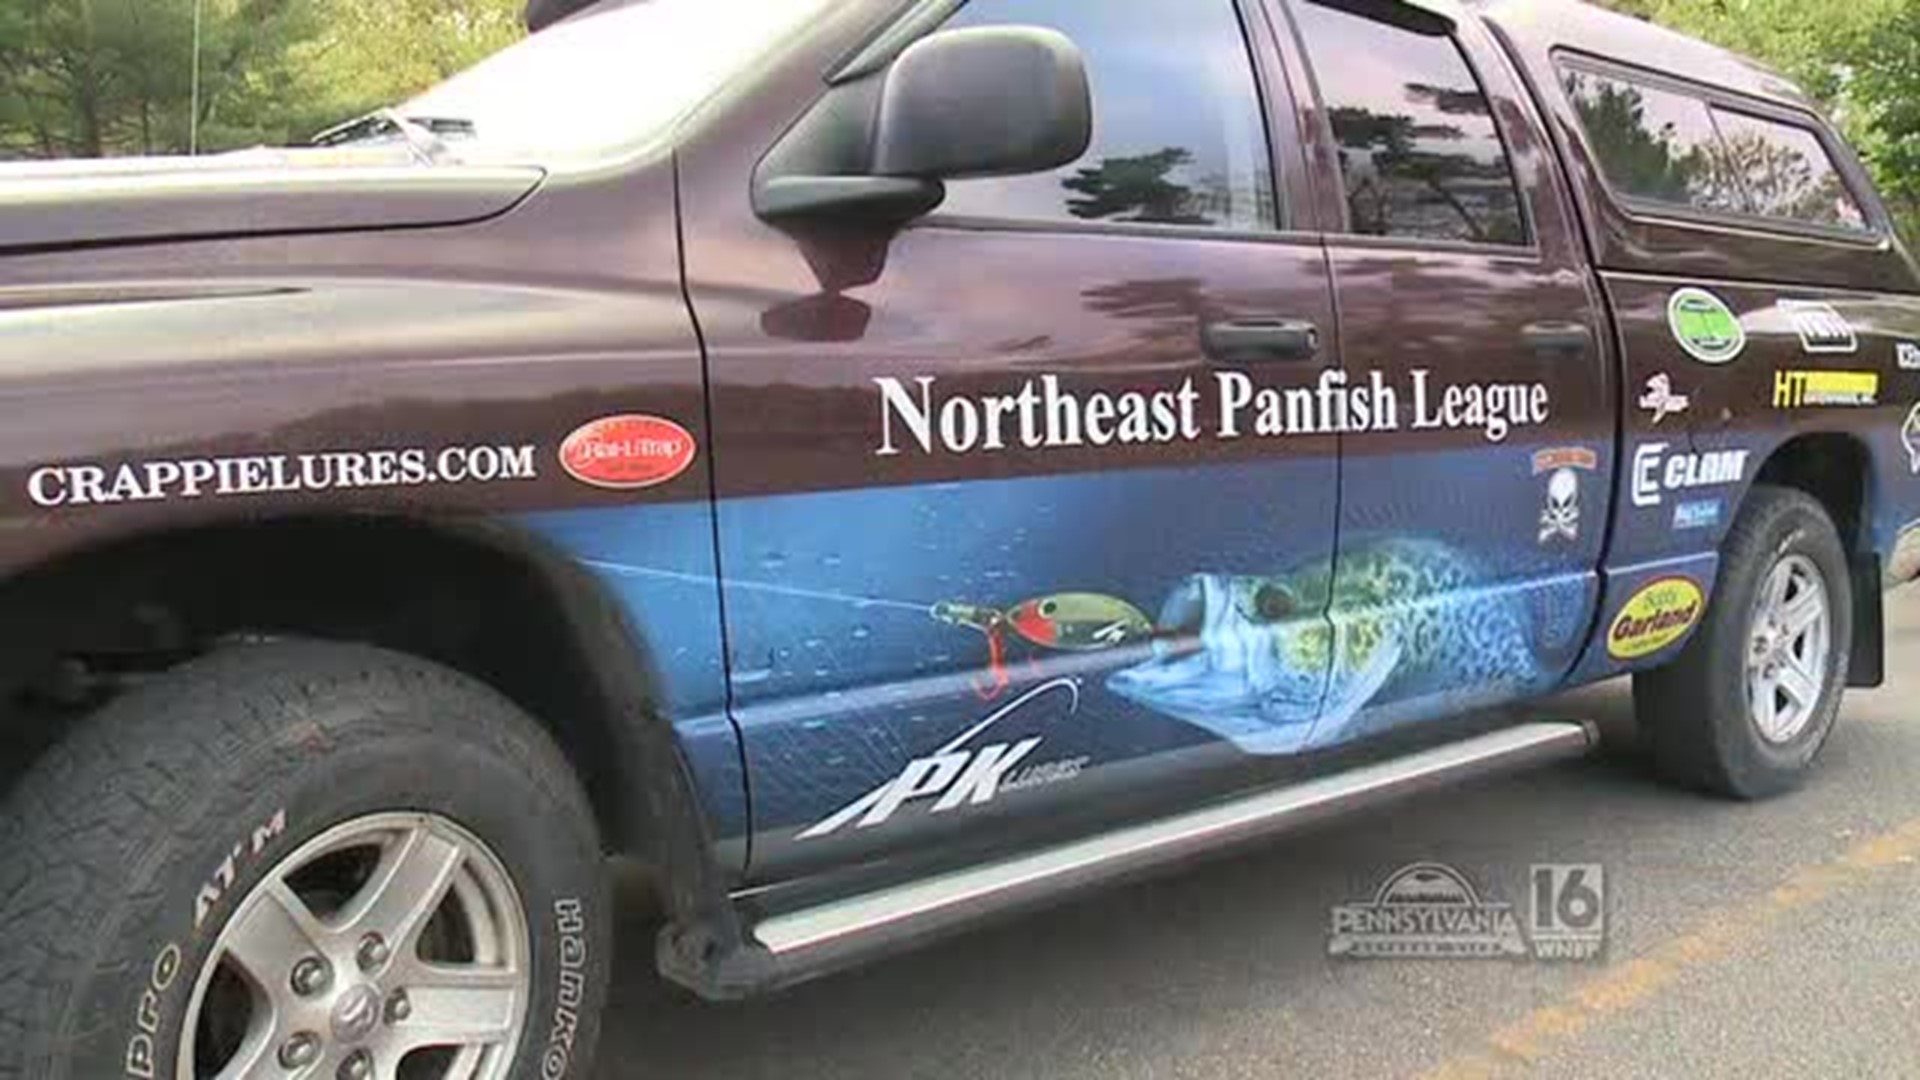 Northeast Panfish League